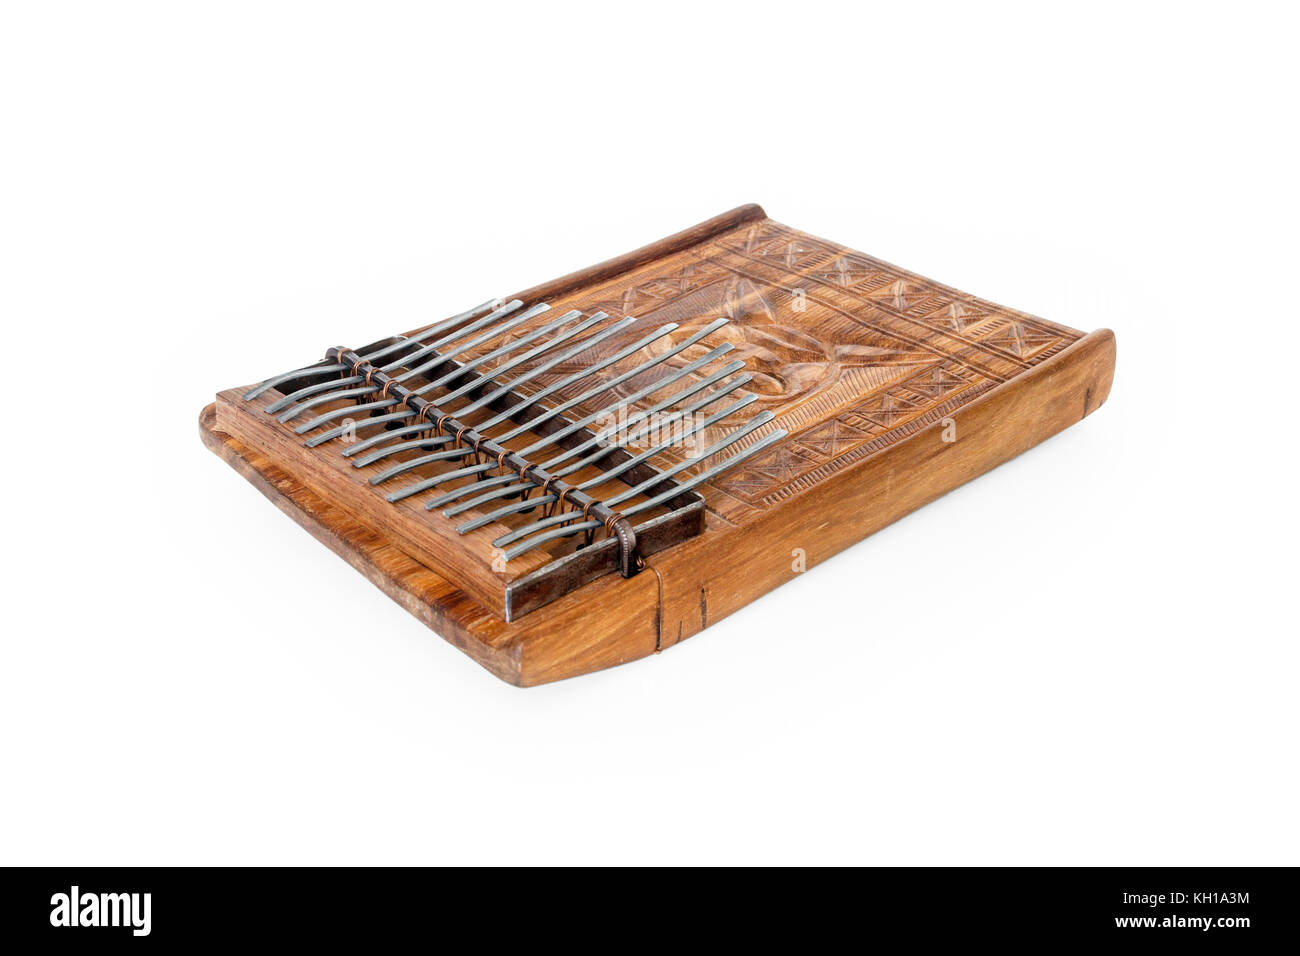 Mbira africana tradicional, un instrumento musical consistente en una caja de resonancia de madera y metal, de Zimbabwe claves frentes Foto de stock